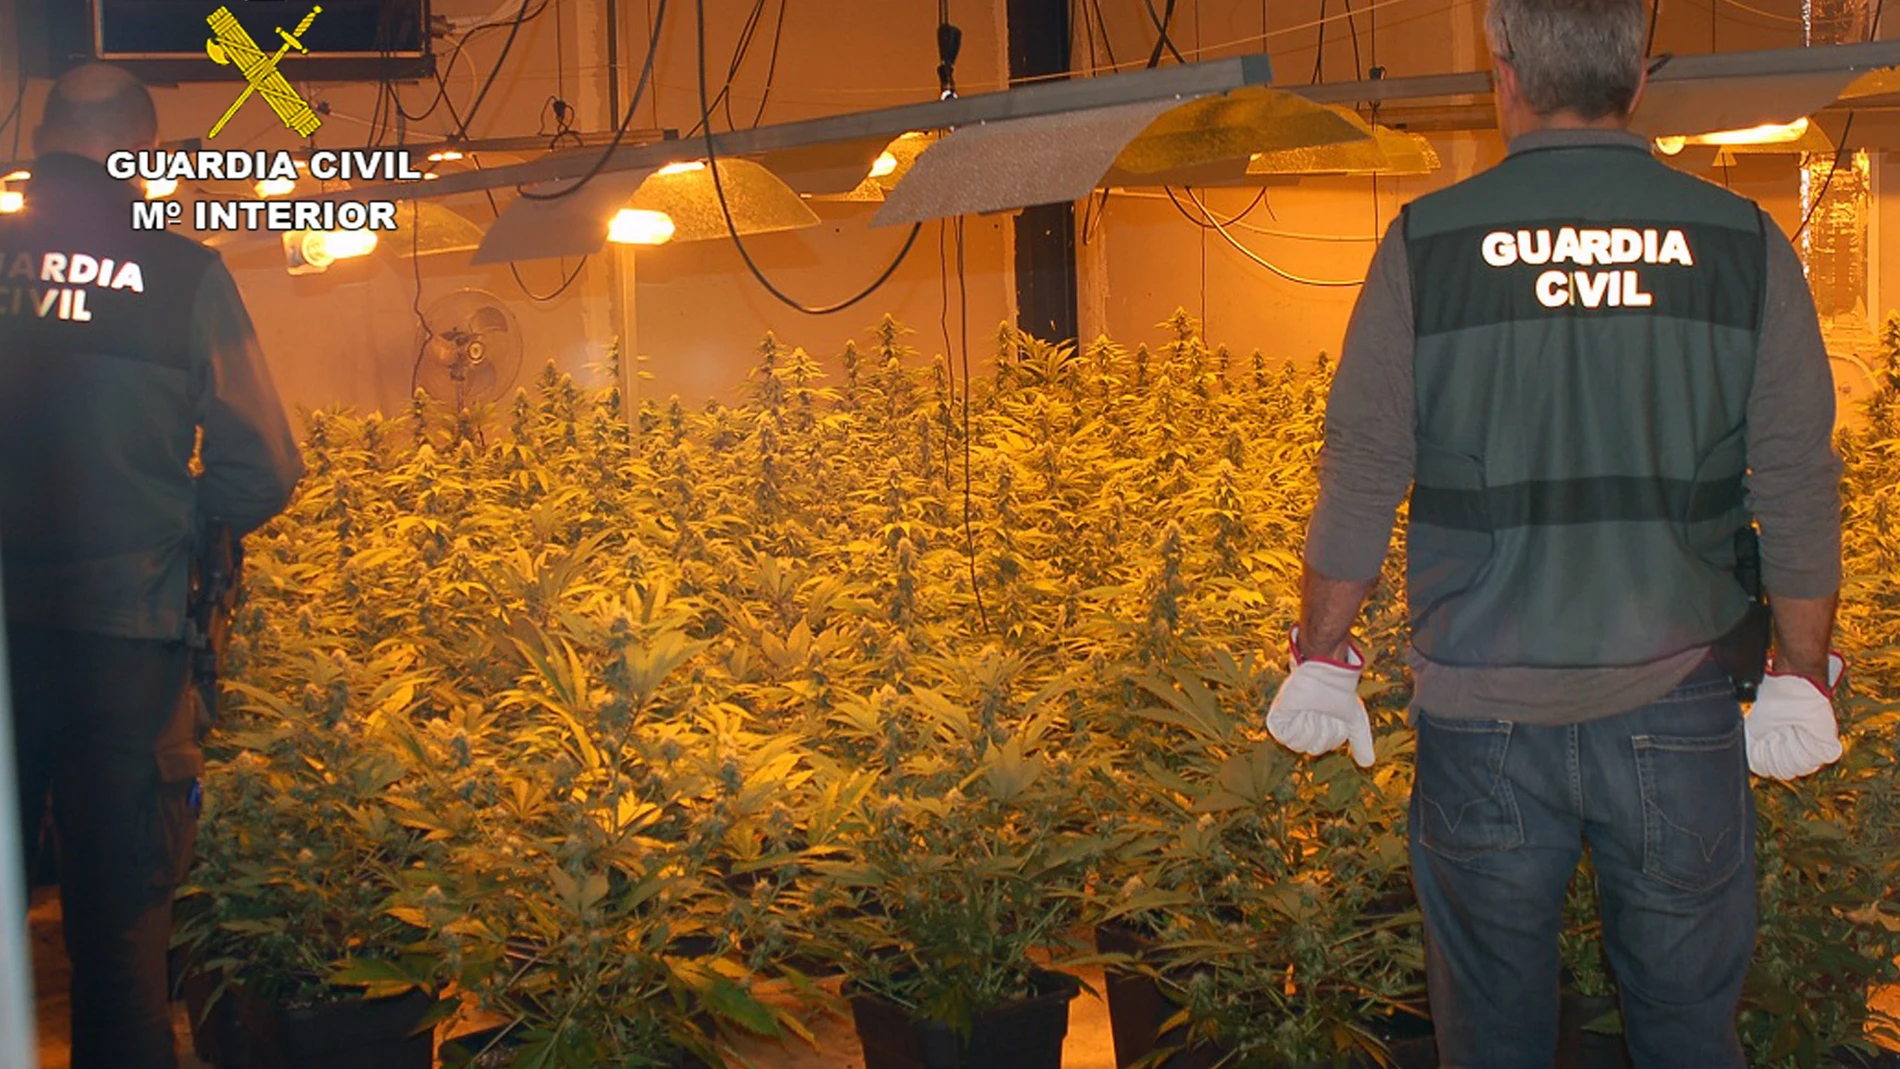 Los agentes hallaron 300 plantas de marihuana en el registro